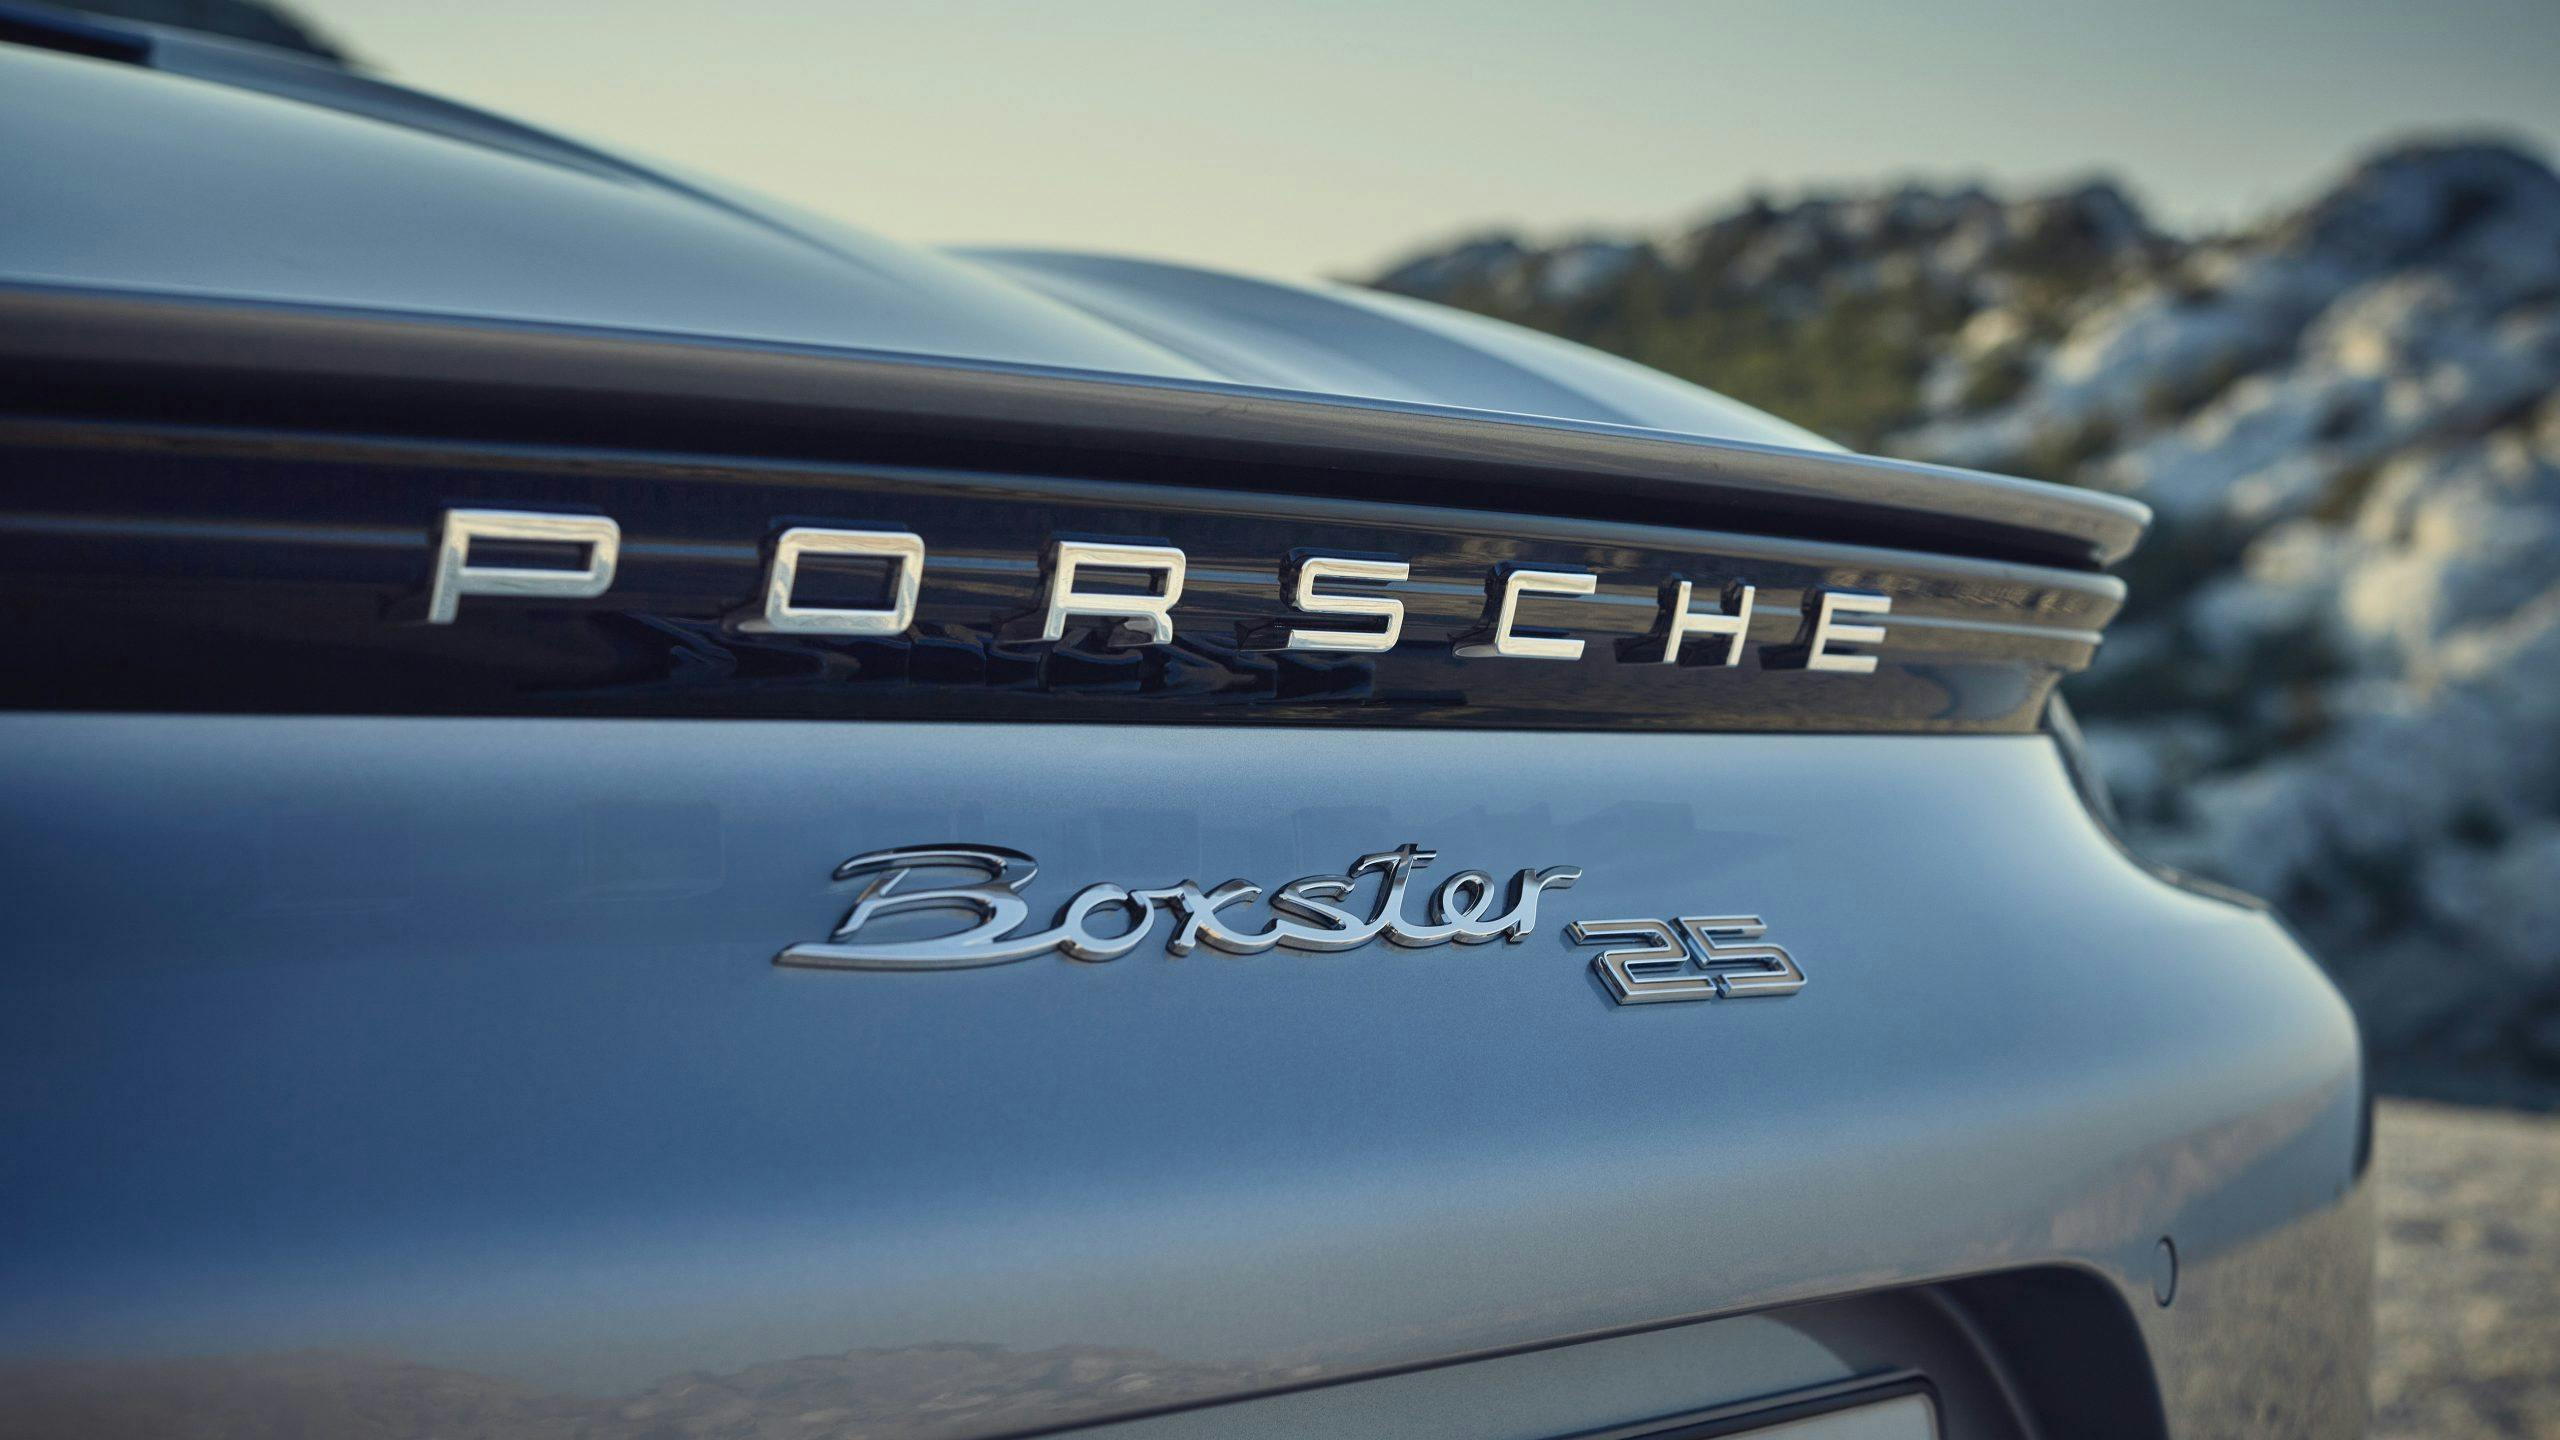 Porsche Boxster 25 badge